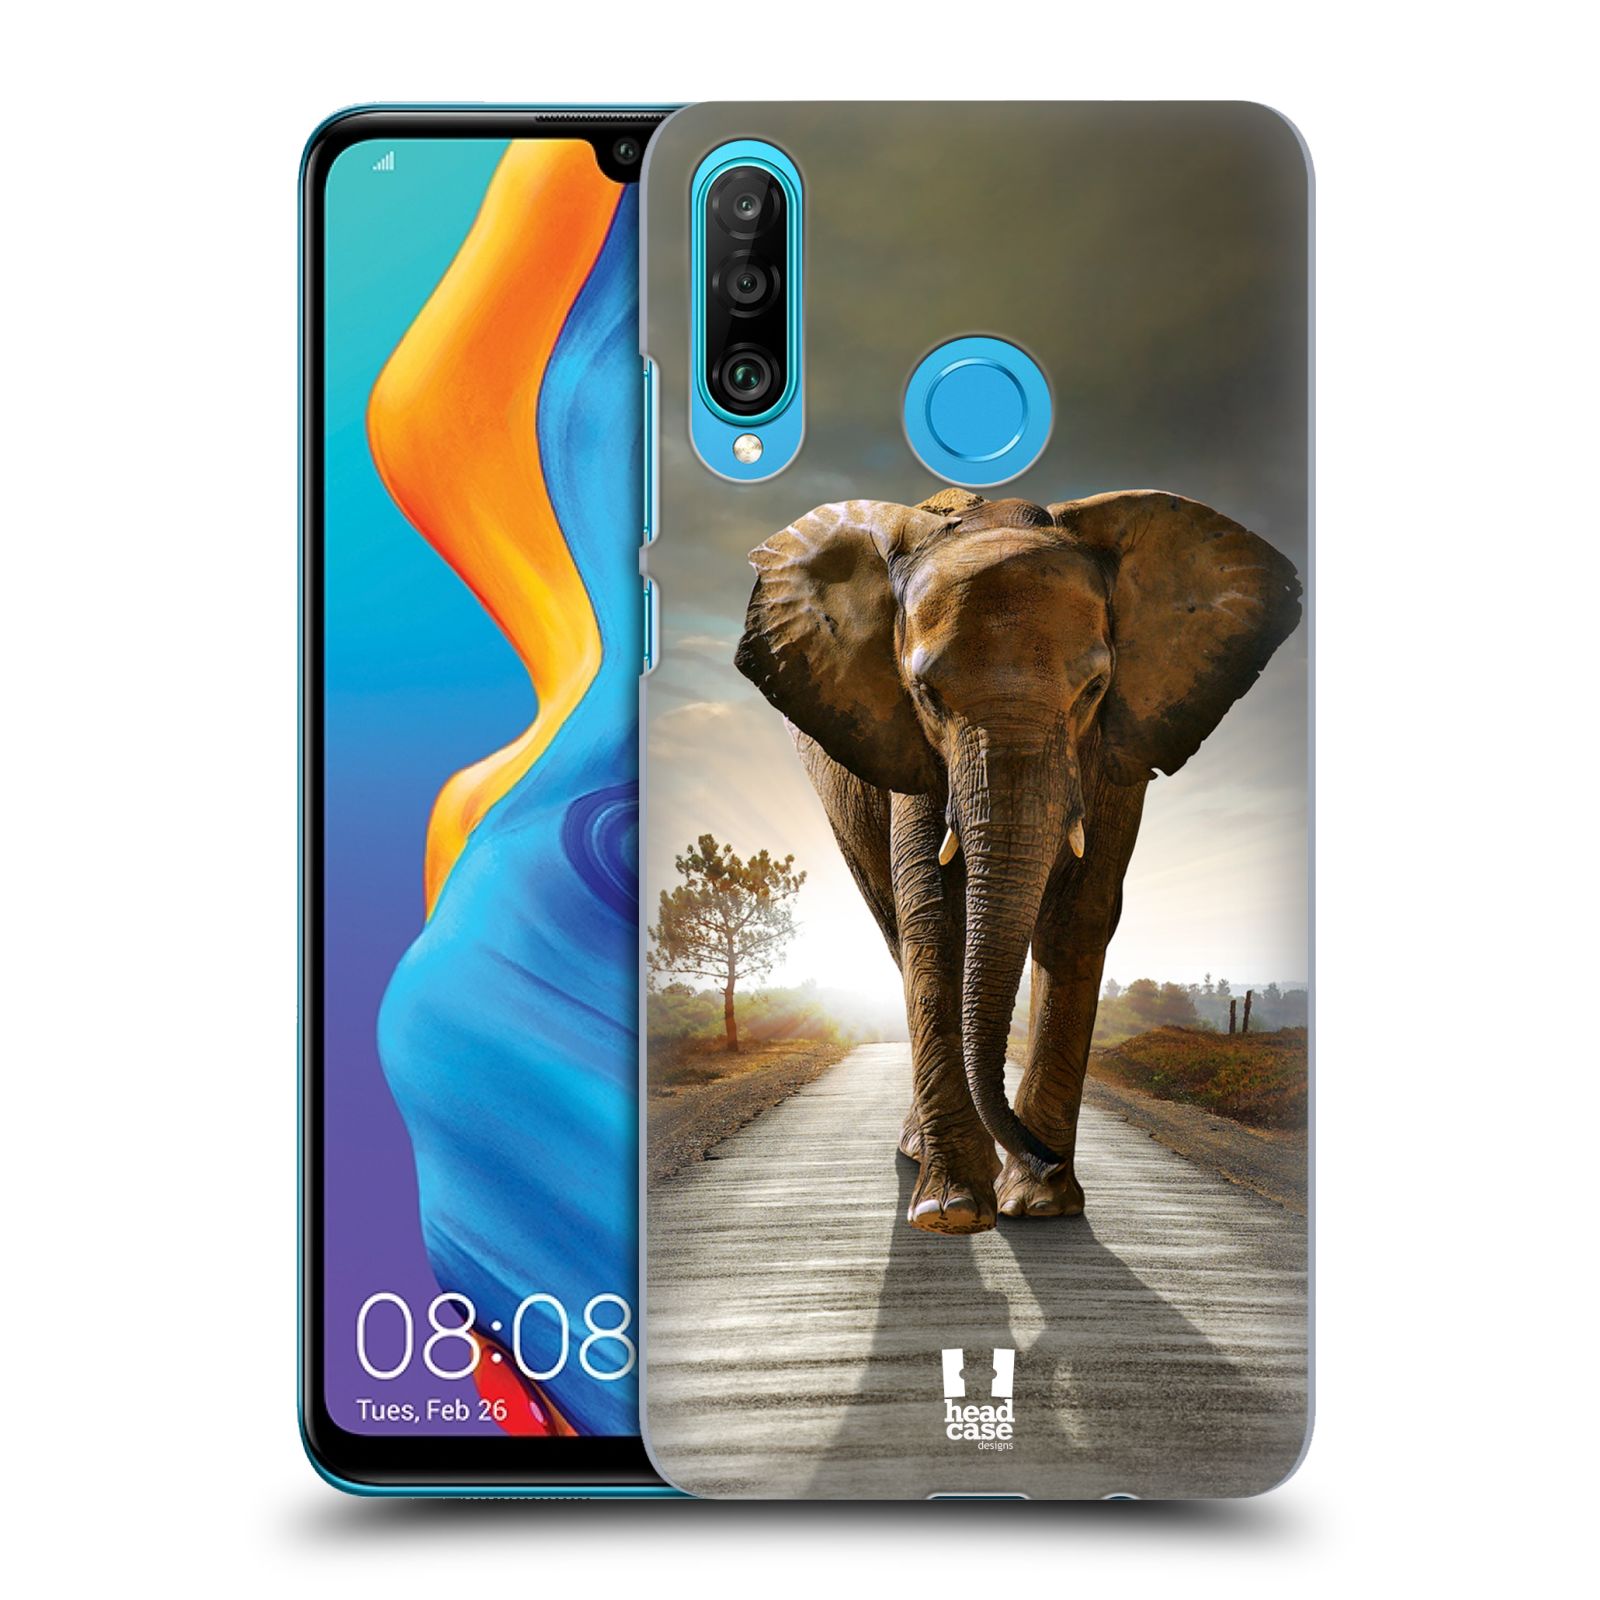 Zadní obal pro mobil Huawei P30 LITE - HEAD CASE - Svět zvířat kráčející slon